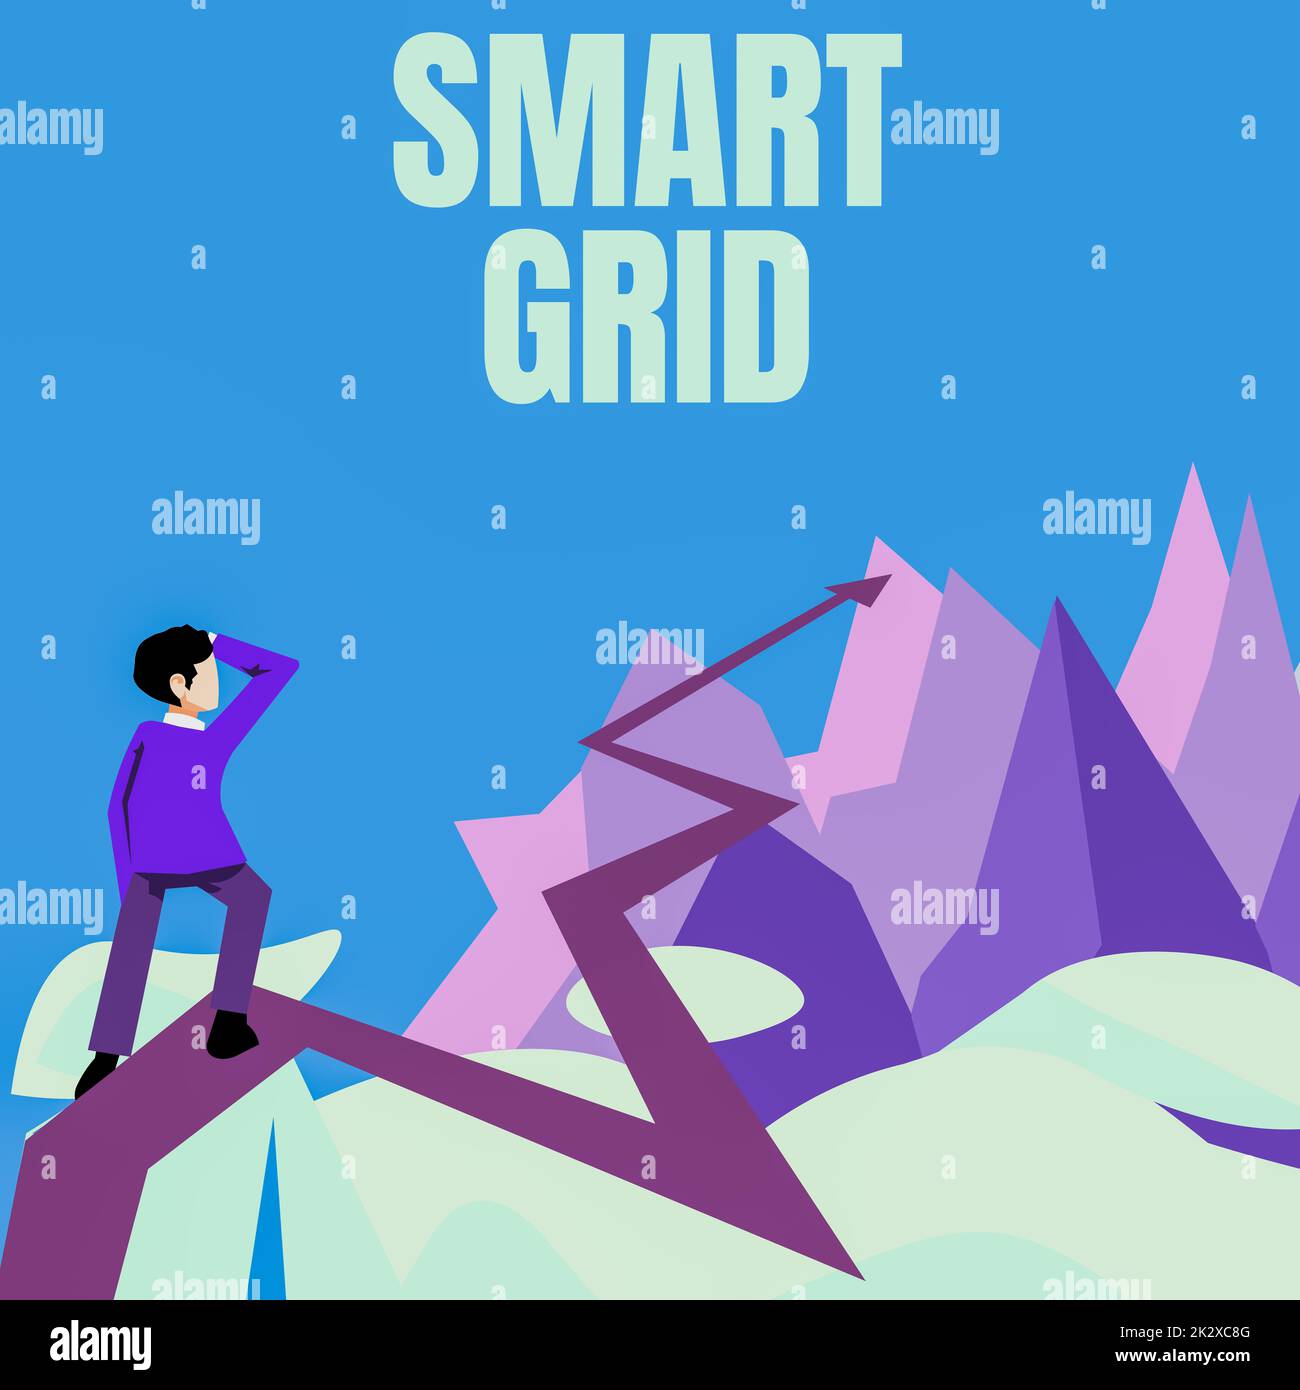 Text mit Inspiration Smart Grid. Der Geschäftsüberblick umfasst Betriebs- und Energiemessungen, darunter Messgeräte man beobachtet den Horizont und zeigt auf, was für einen zukünftigen Projekterfolg steht. Stockfoto